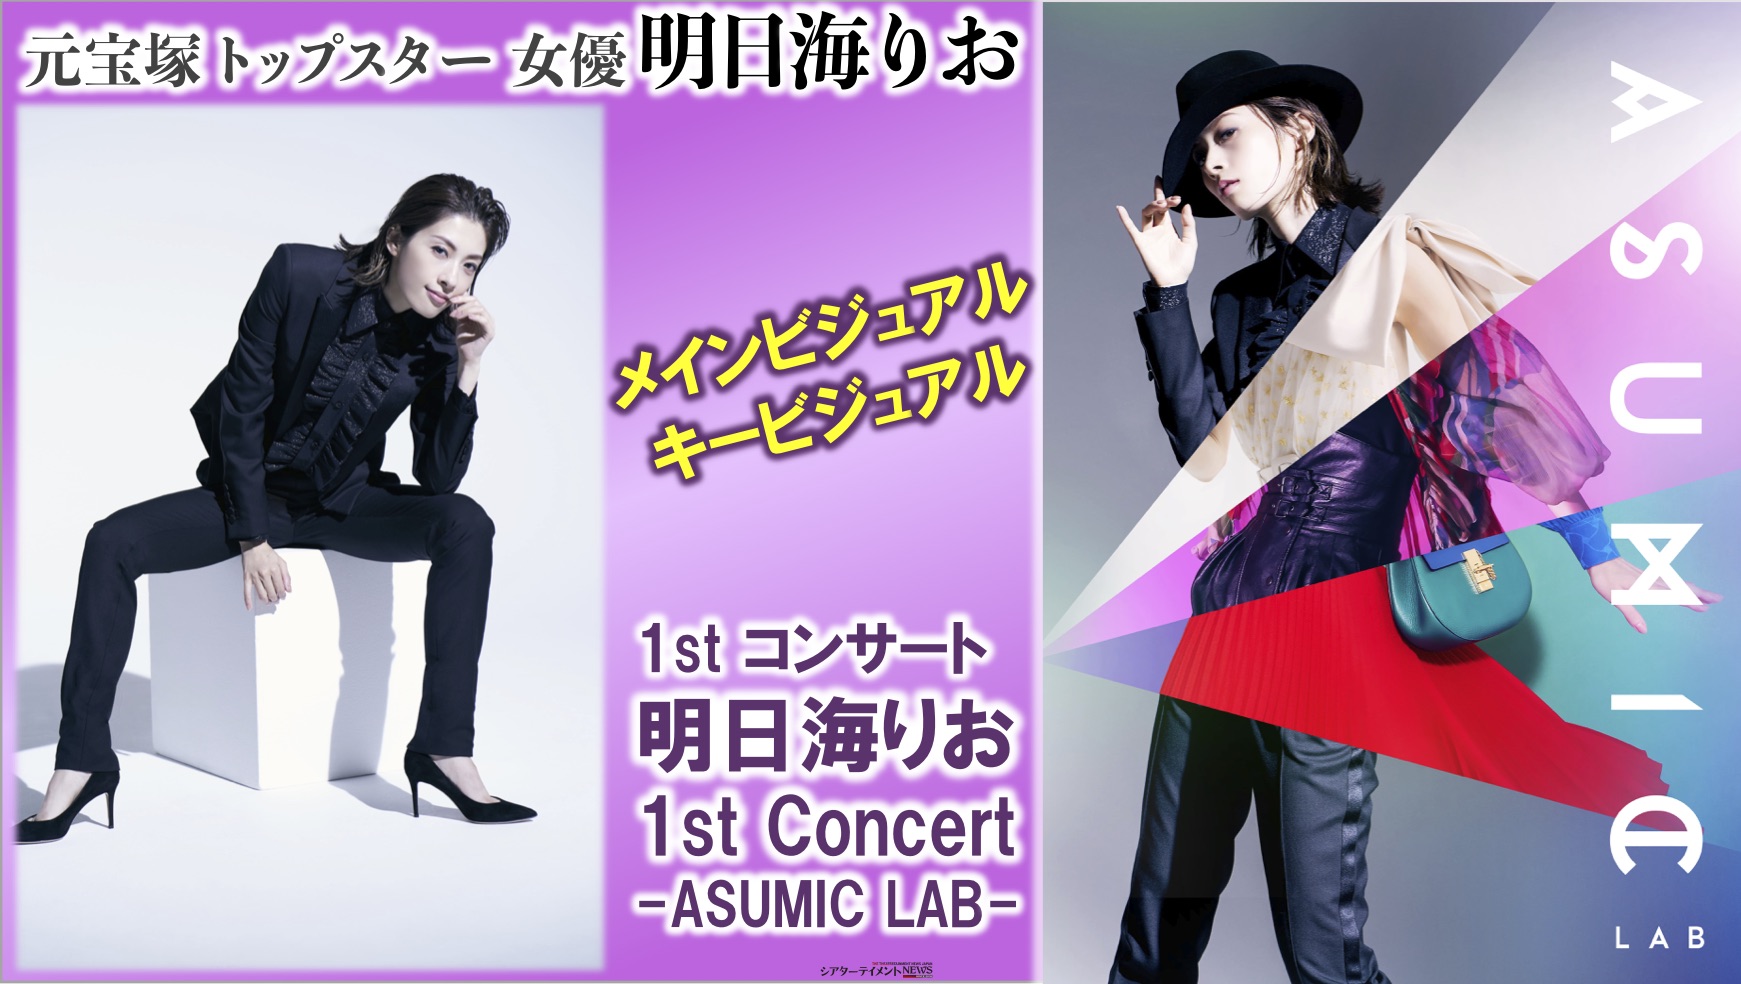 明日海りお ファーストコンサート「ASUMIC LAB」Blu-ray - 日本映画